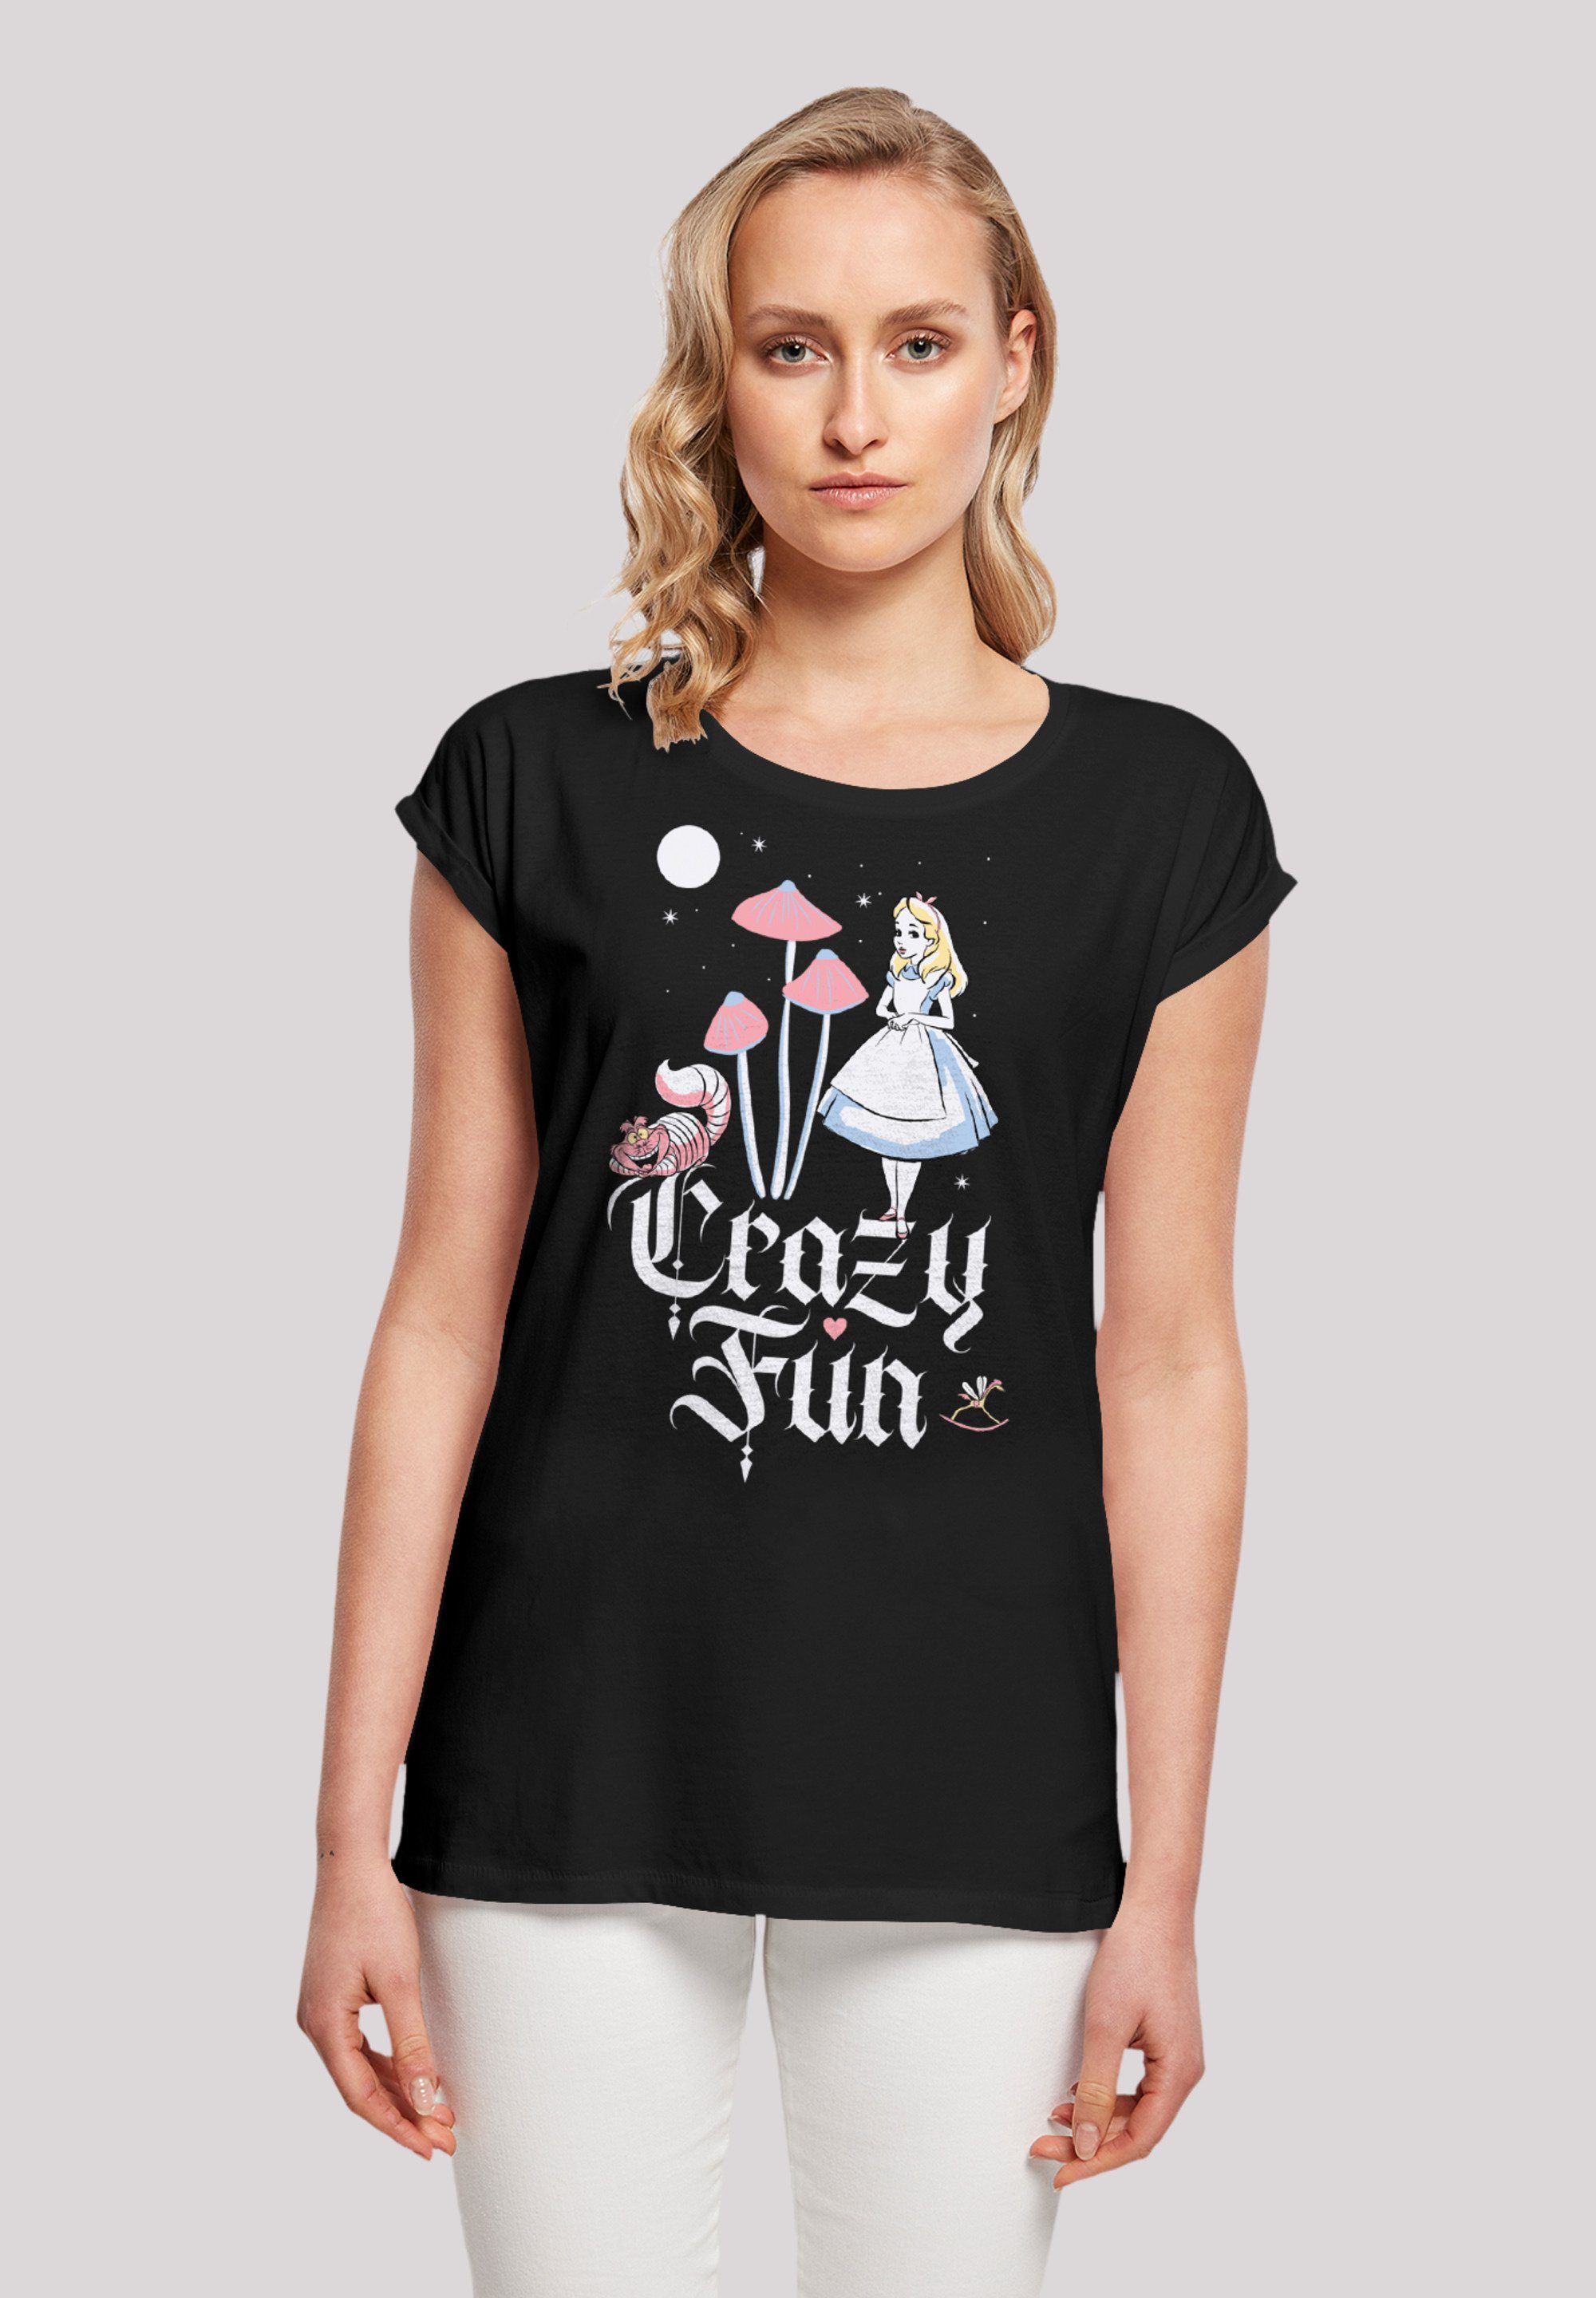 F4NT4STIC T-Shirt Disney Alice im mit Premium Fun Crazy Qualität, hohem Sehr weicher Tragekomfort Baumwollstoff Wunderland